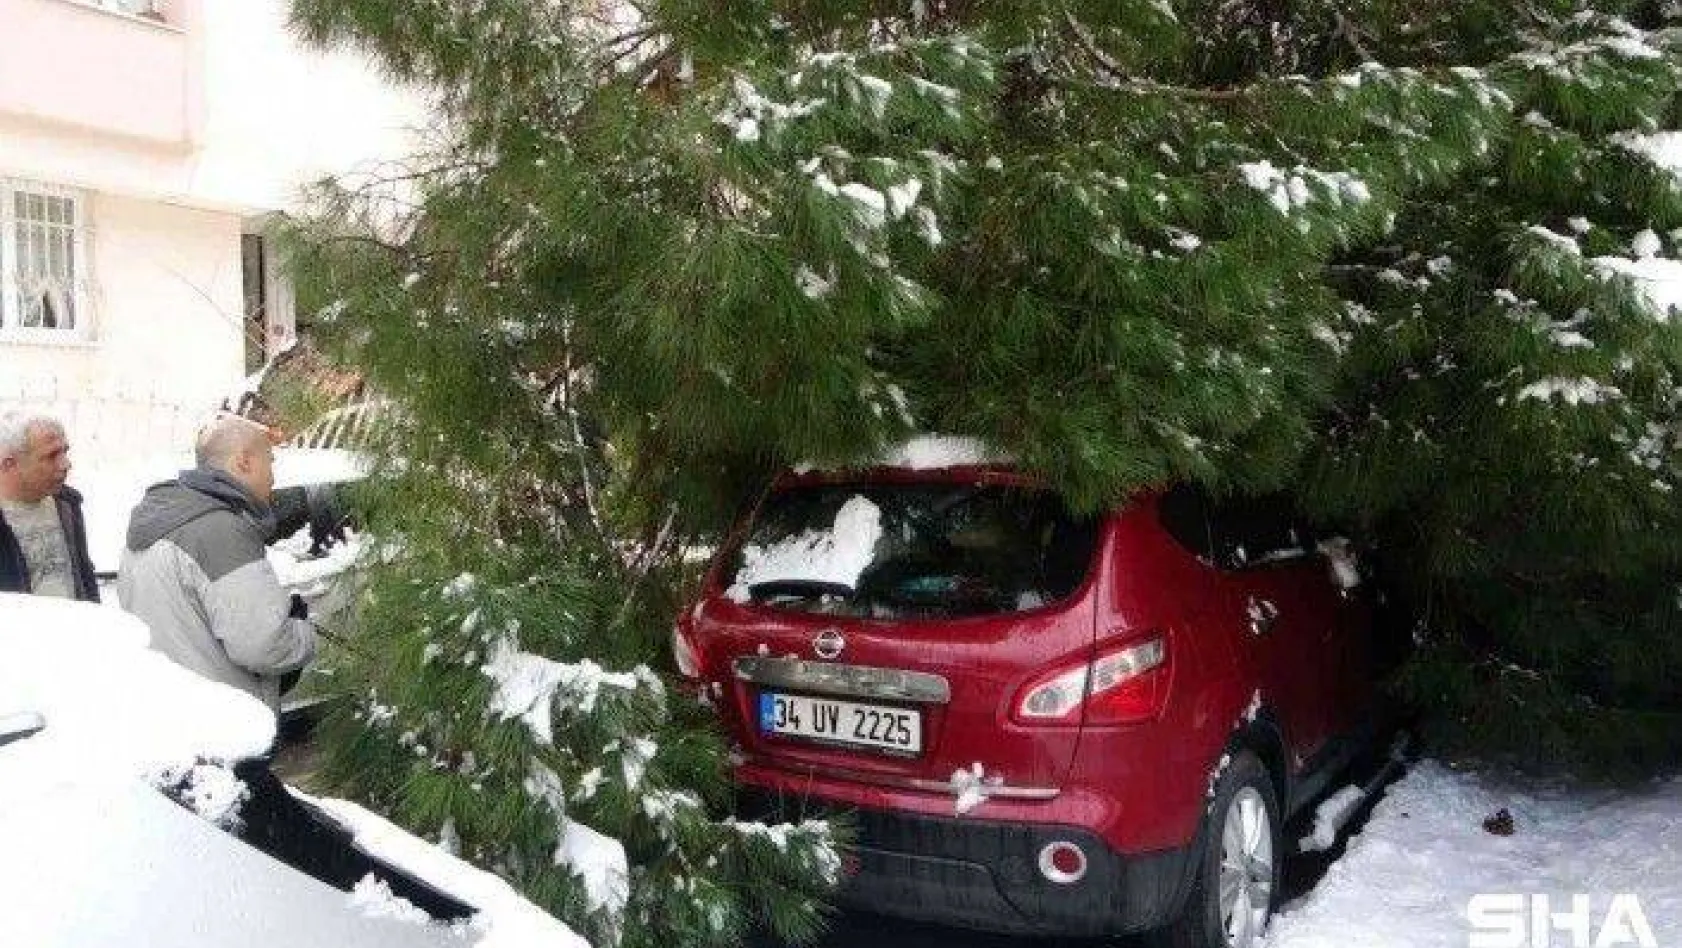 Maltepe'de yoğun kara dayanamayan ağaç, park halindeki 2 aracın üstüne devrildi